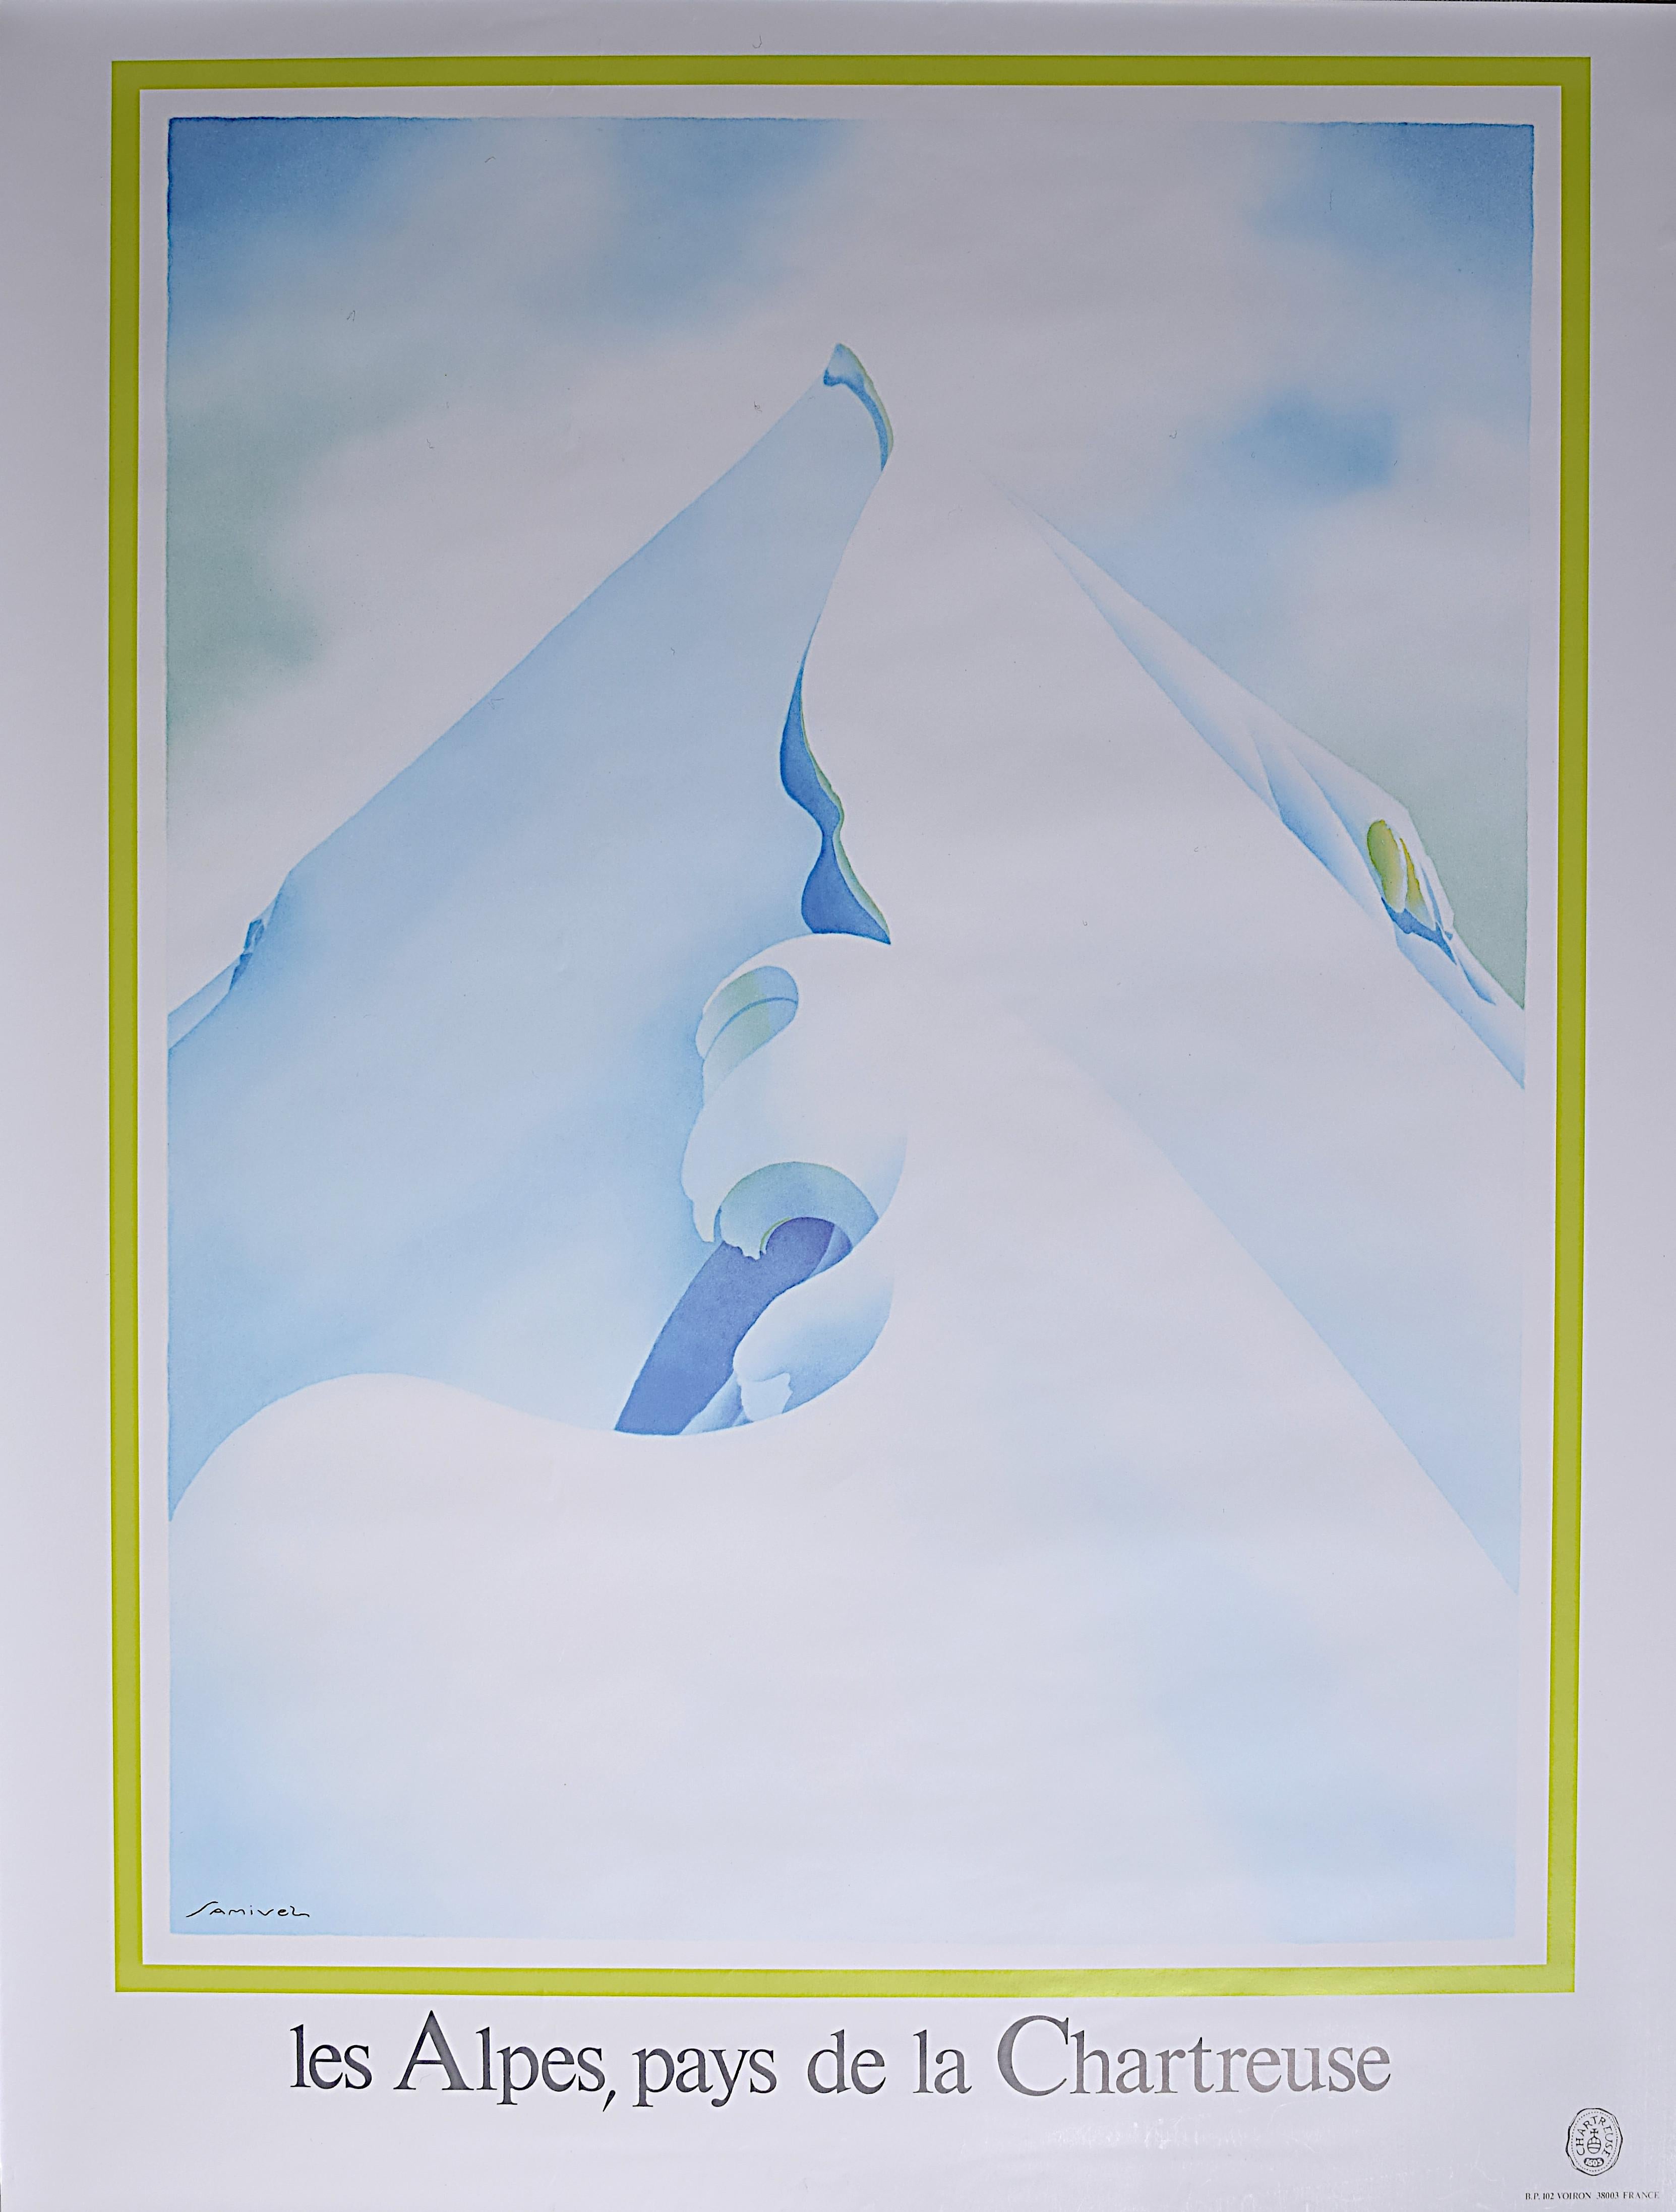 Samivel Paul Gayet-Tancrède  Landscape Print - Samivel original vintage poster Les Alps Pays de Chartreuse France Skiing Spirit